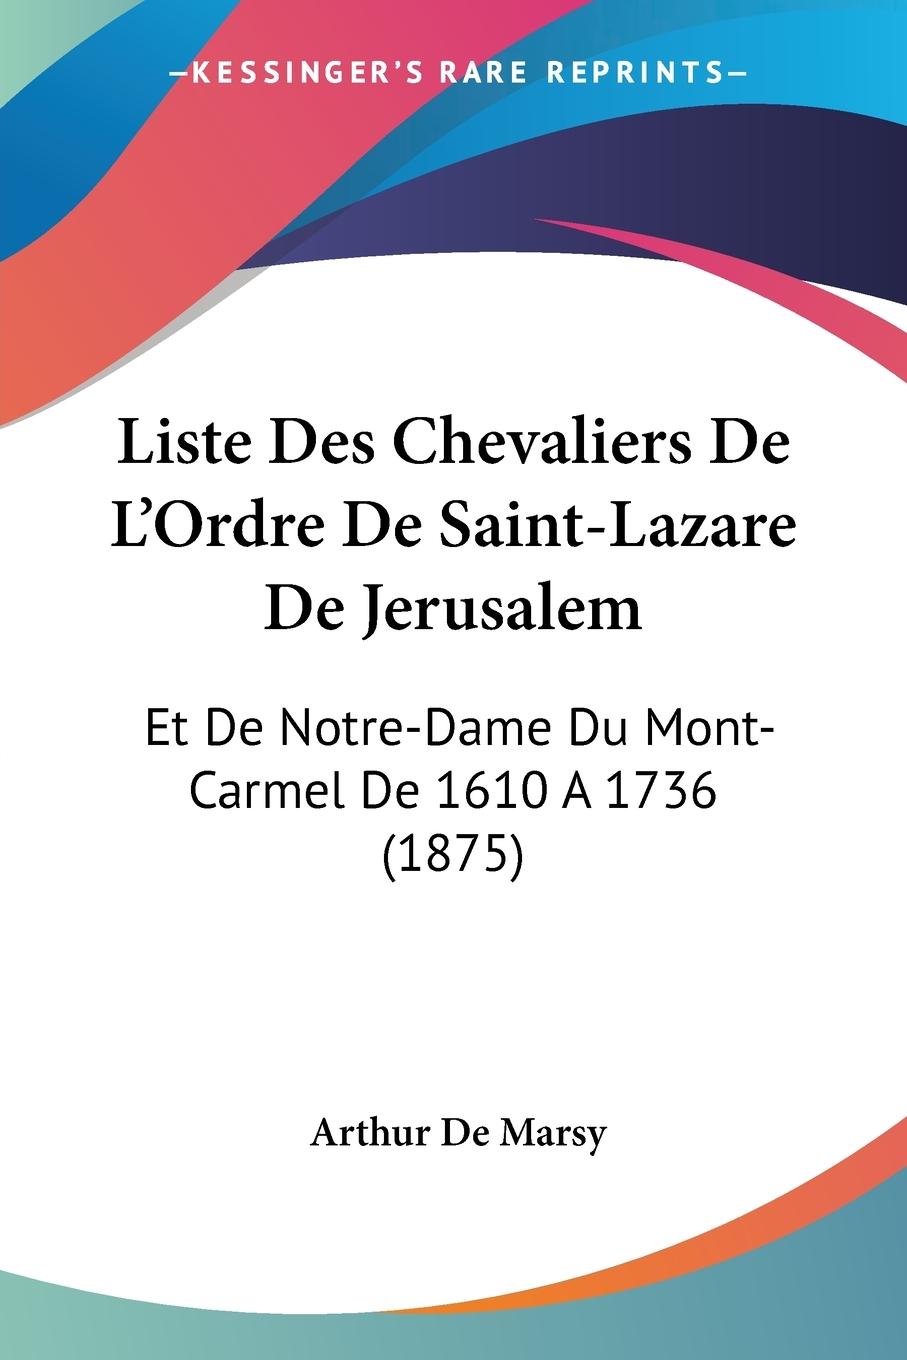 Liste Des Chevaliers De L Ordre De Saint-Lazare De Jerusalem - De Marsy, Arthur